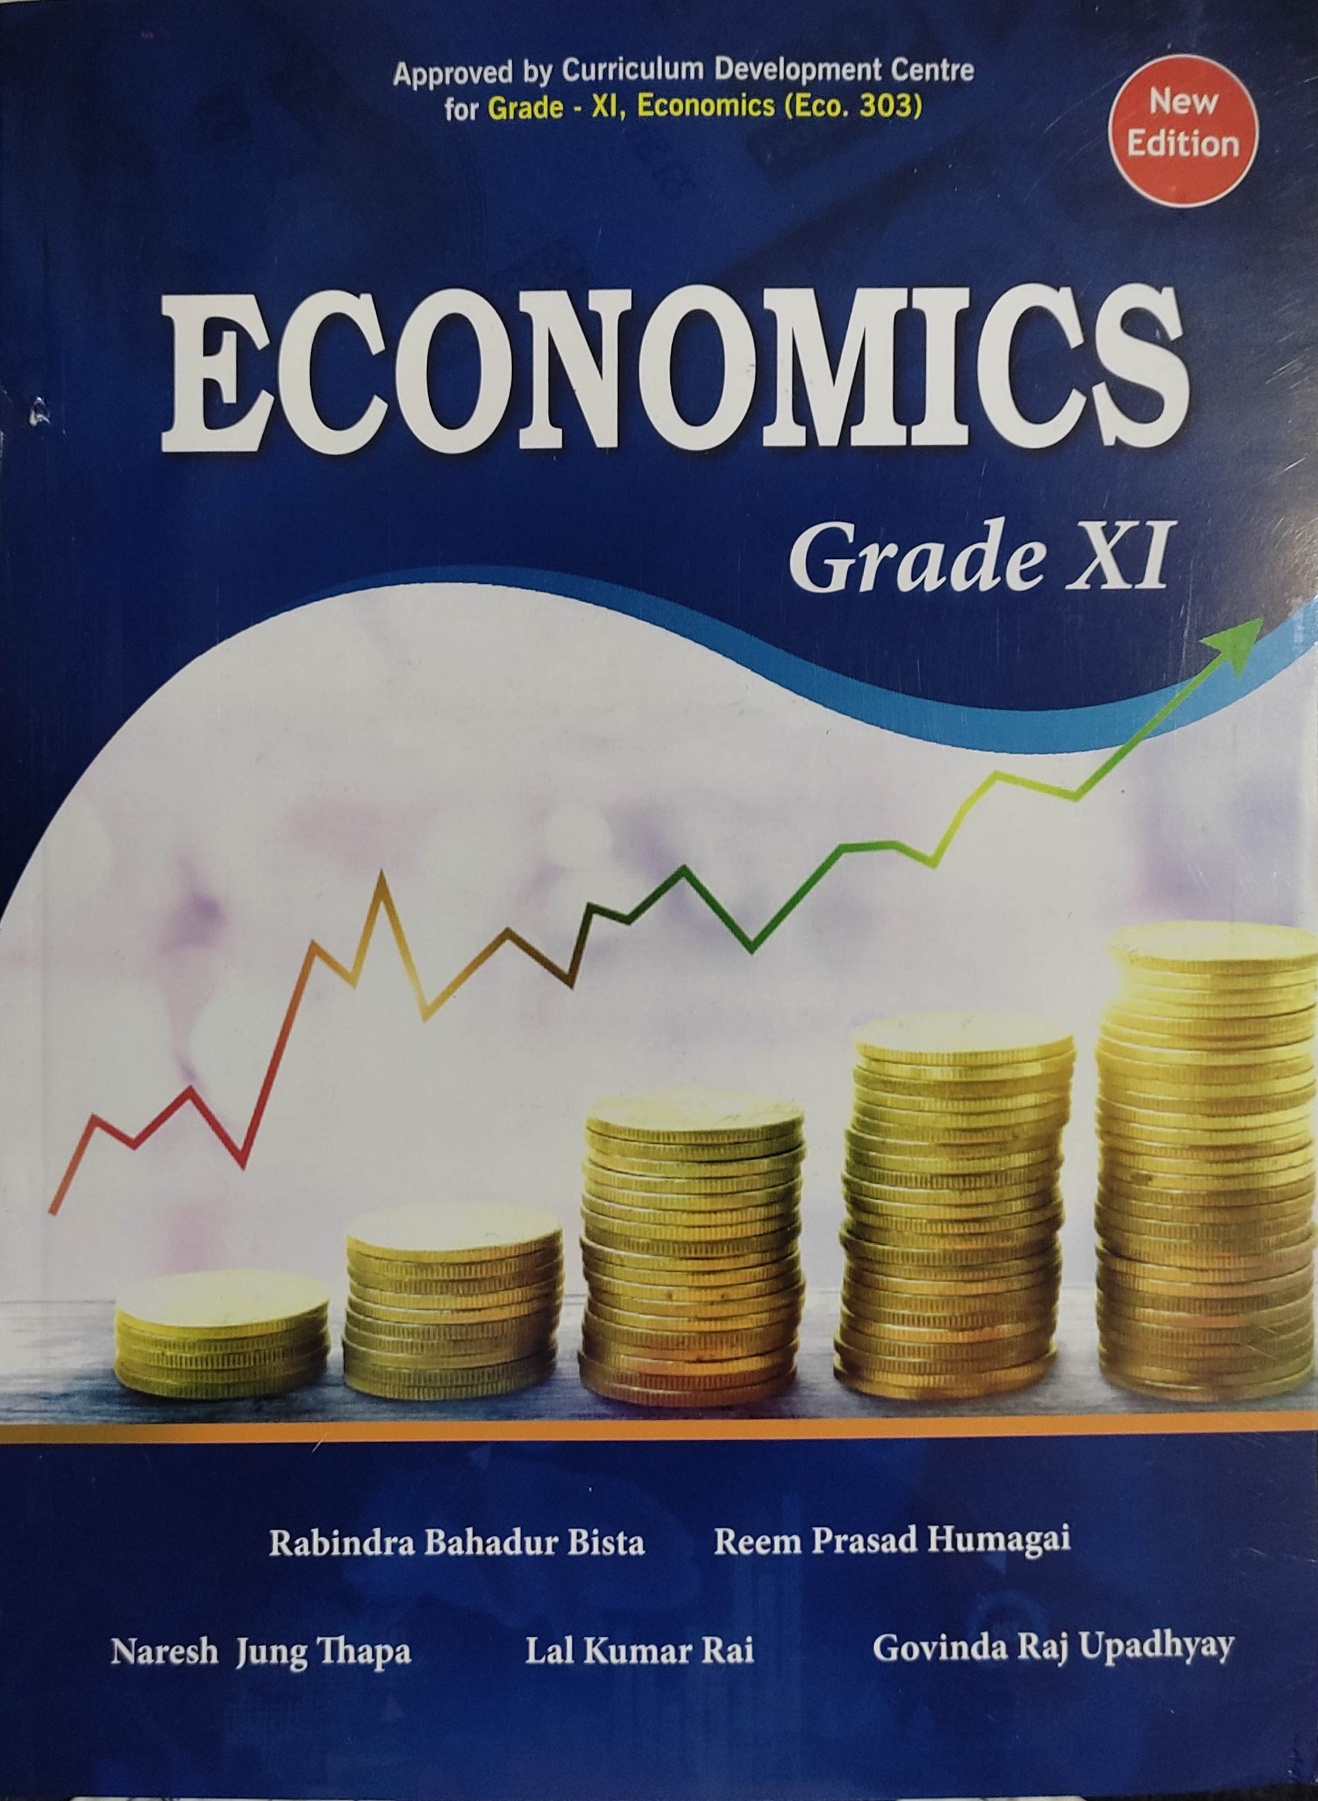 Heritage Economics Grade XI